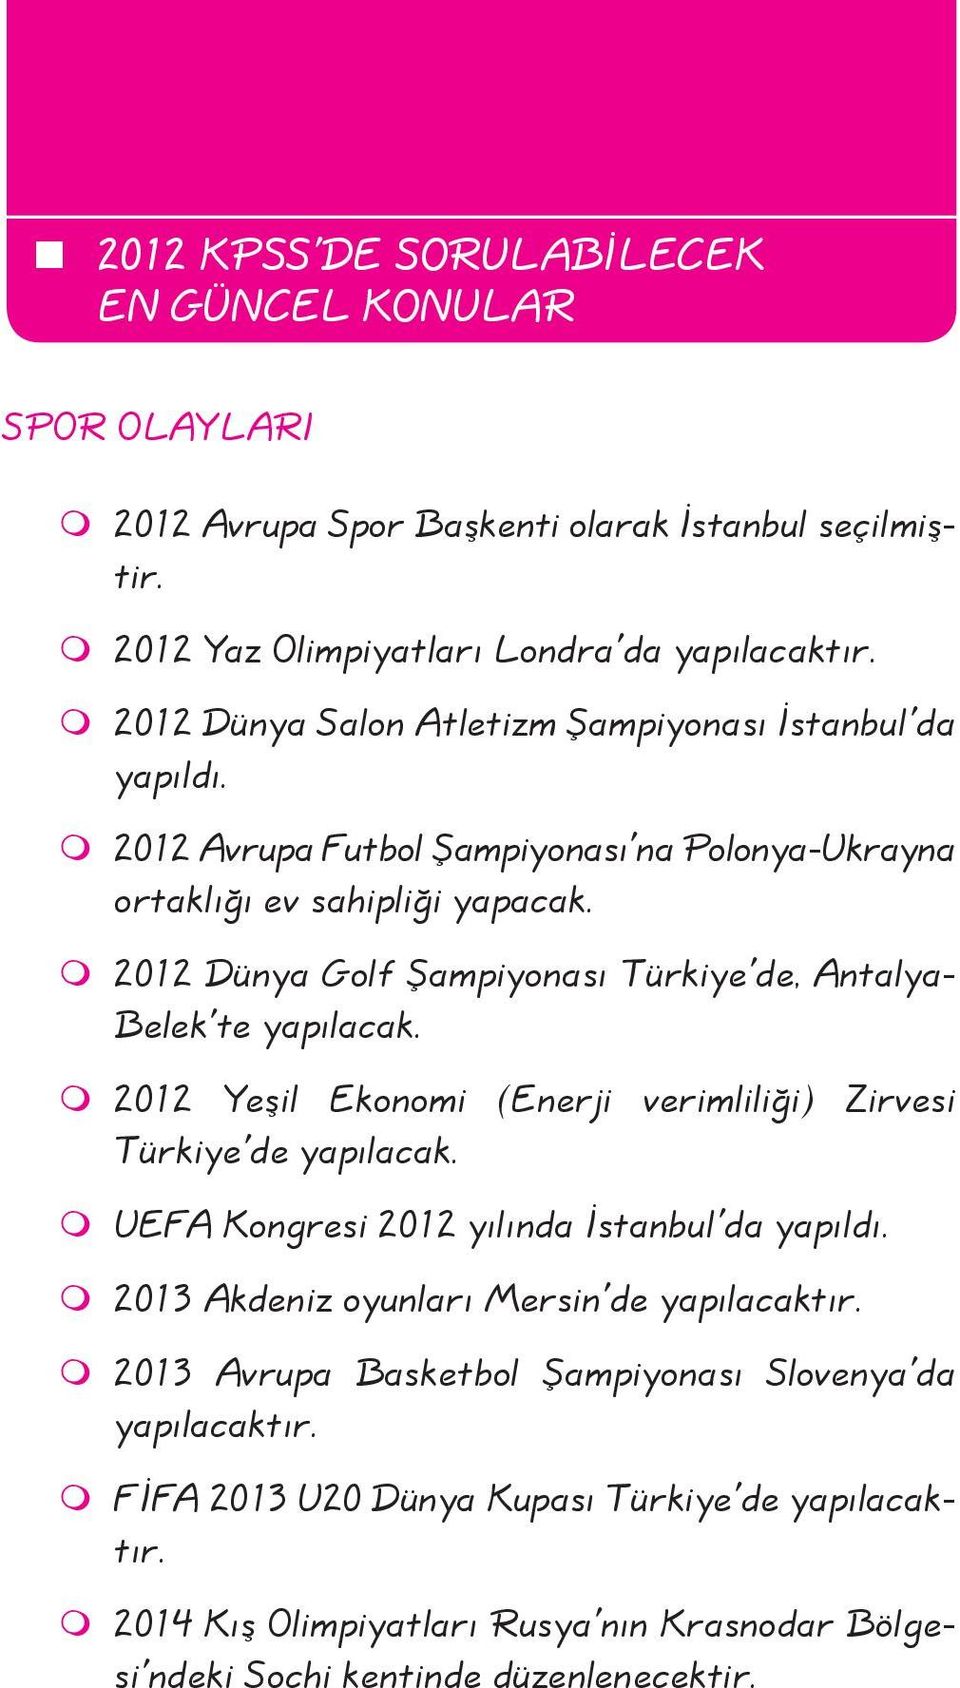 2012 Dünya Golf Şampiyonası Türkiye'de, Antalya- Belek'te yapılacak. 2012 Yeşil Ekonomi (Enerji verimliliği) Zirvesi Türkiye'de yapılacak.